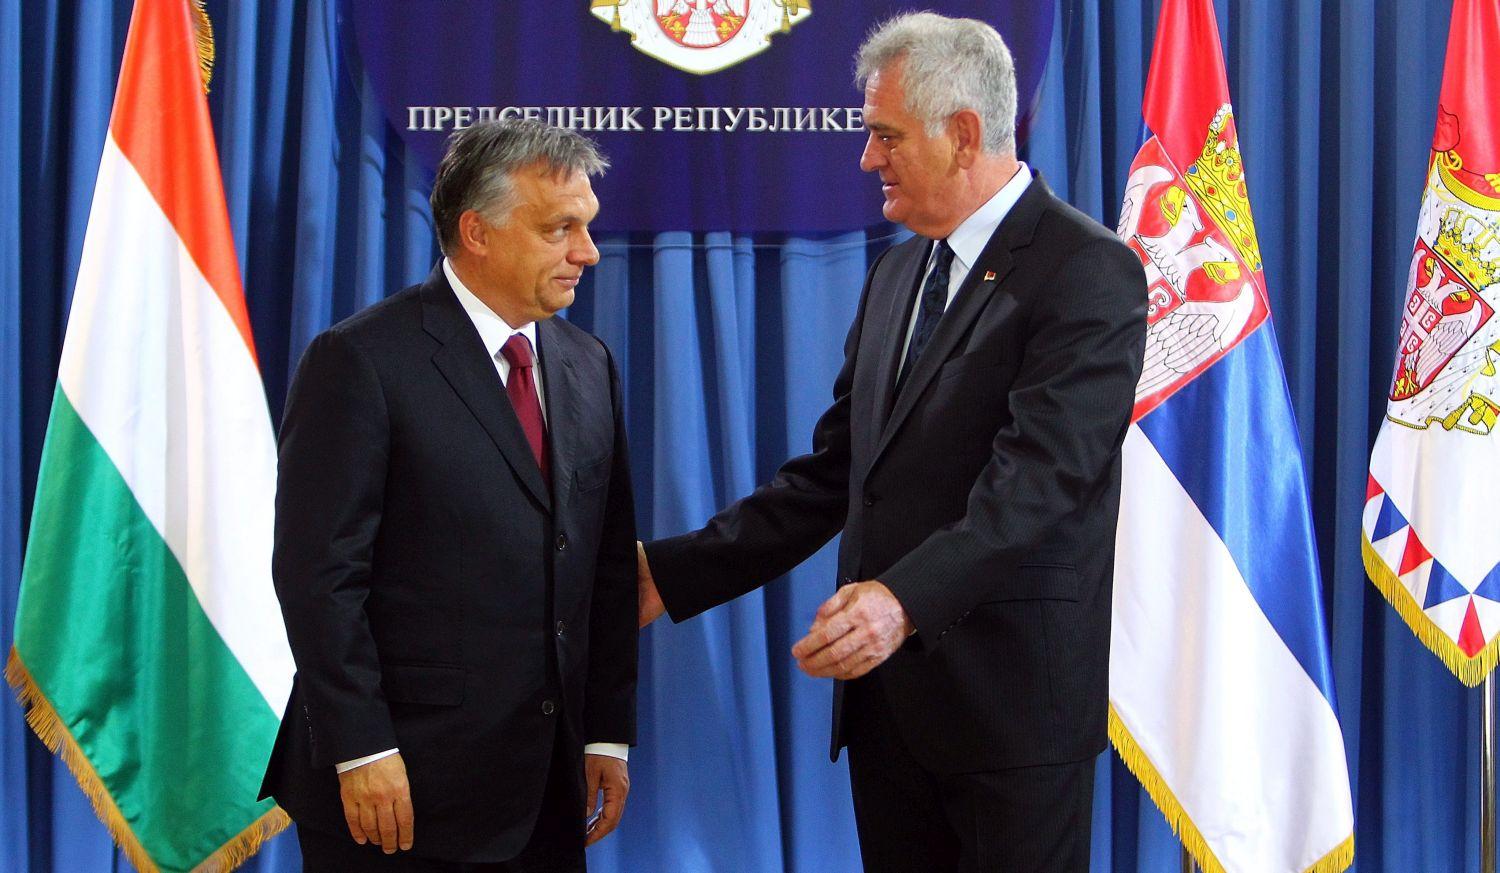 Egy szívesen látott vendég a szerb elnöki palotában: Nikolic államfő pár napja fogadta Orbán Viktort (MTI/EPA/Koca Sulejmanovic)